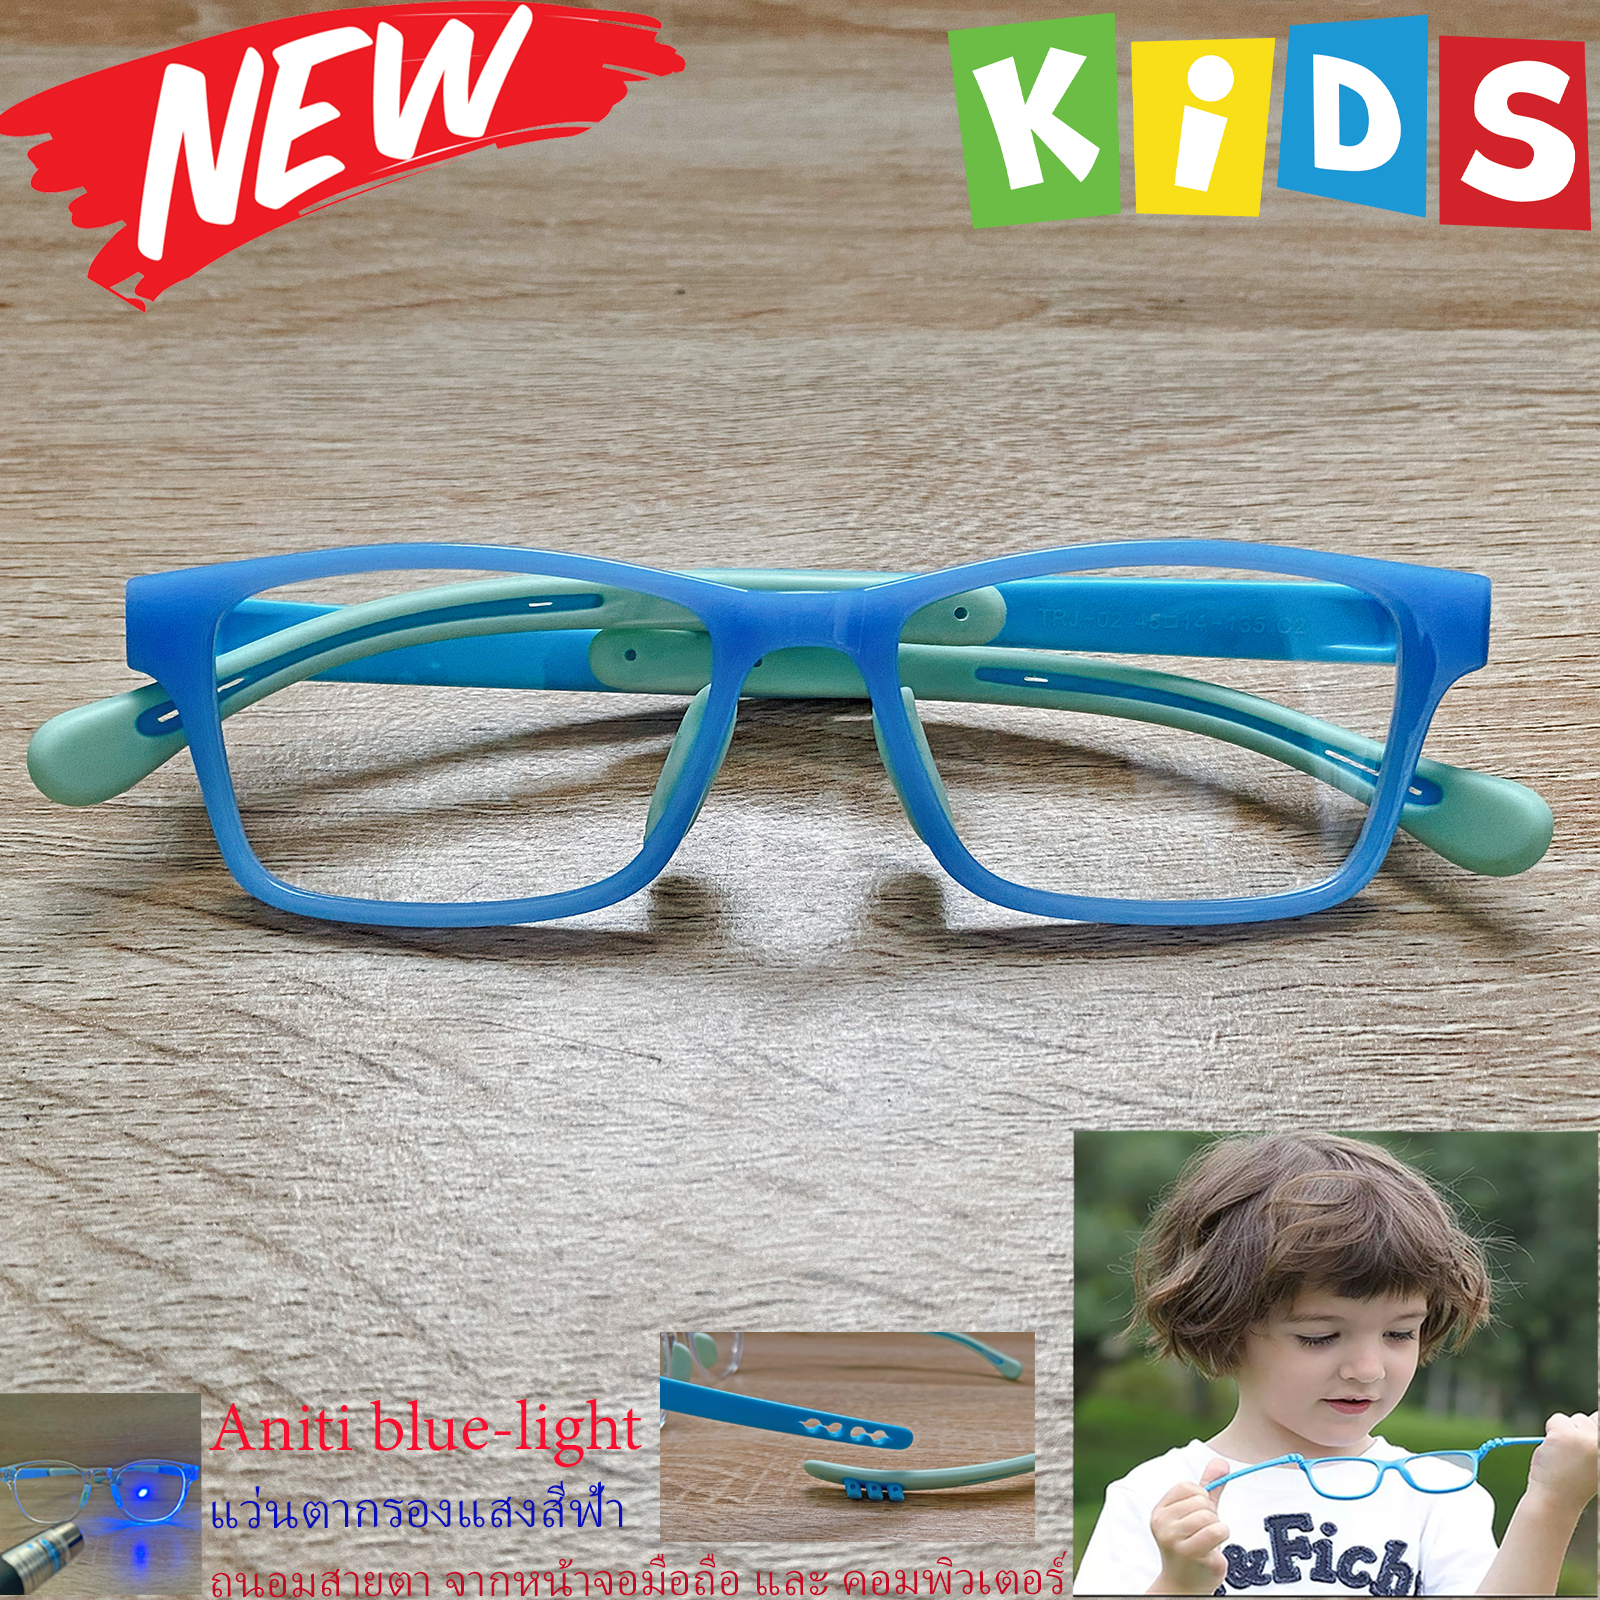 กรอบแว่นตาเด็ก กรองแสง สีฟ้า blue block แว่นเด็ก บลูบล็อค รุ่น 02 สีฟ้า ขาข้อต่อยืดหยุ่น ขาปรับระดับได้ วัสดุTR90 เหมาะสำหรับเลนส์สายตา